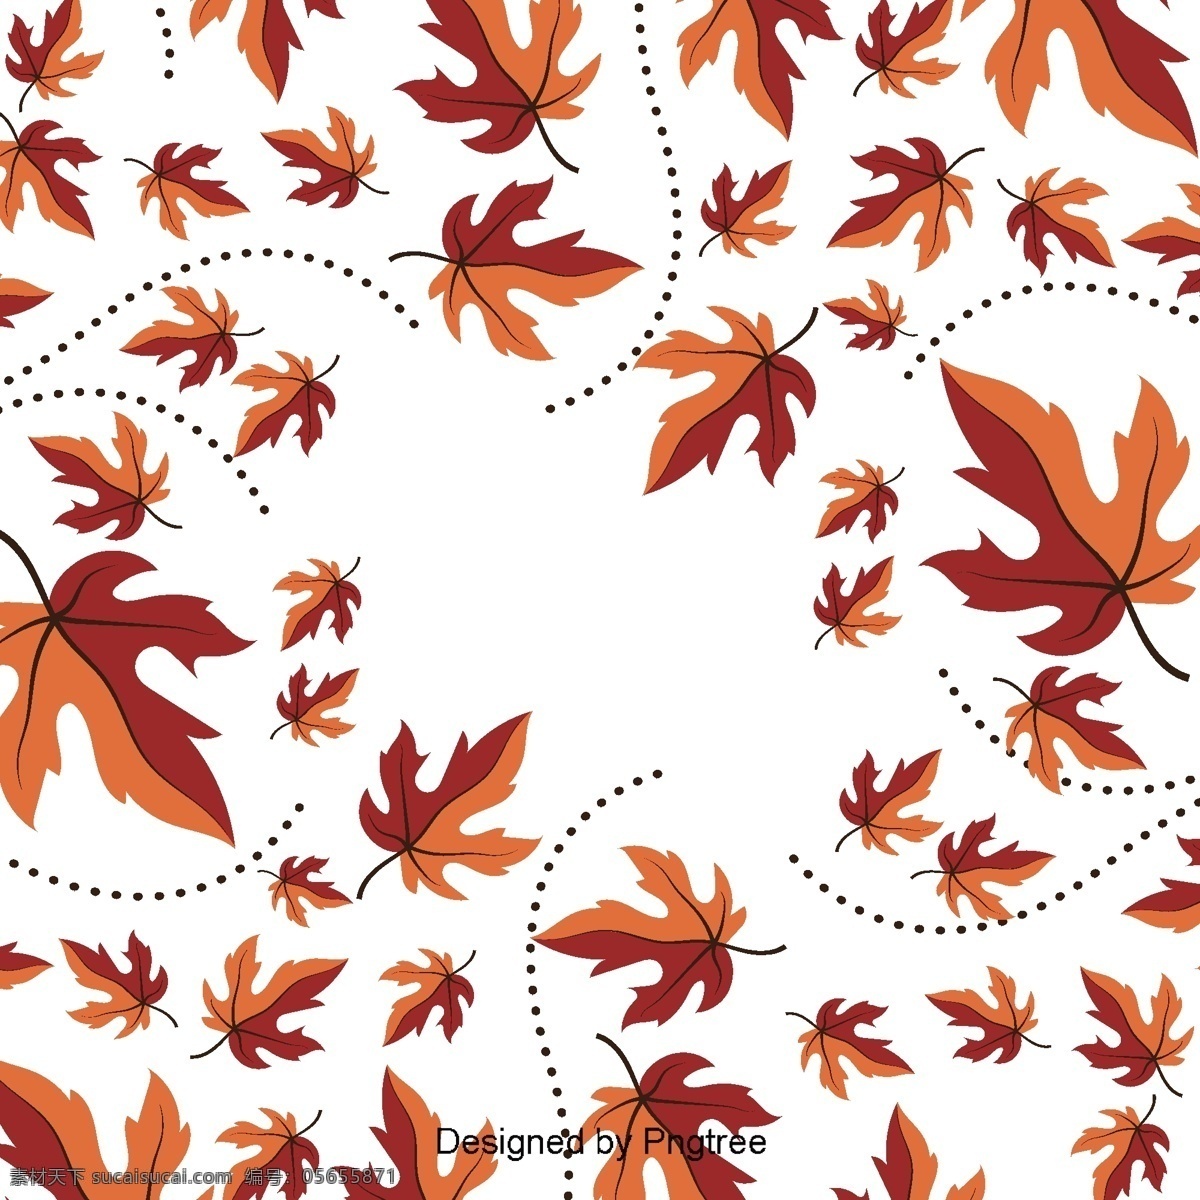 美丽 卡通 可爱 平展 手绘 秋叶 壁纸 创意 平面 秋天 树叶 黄叶 条纹